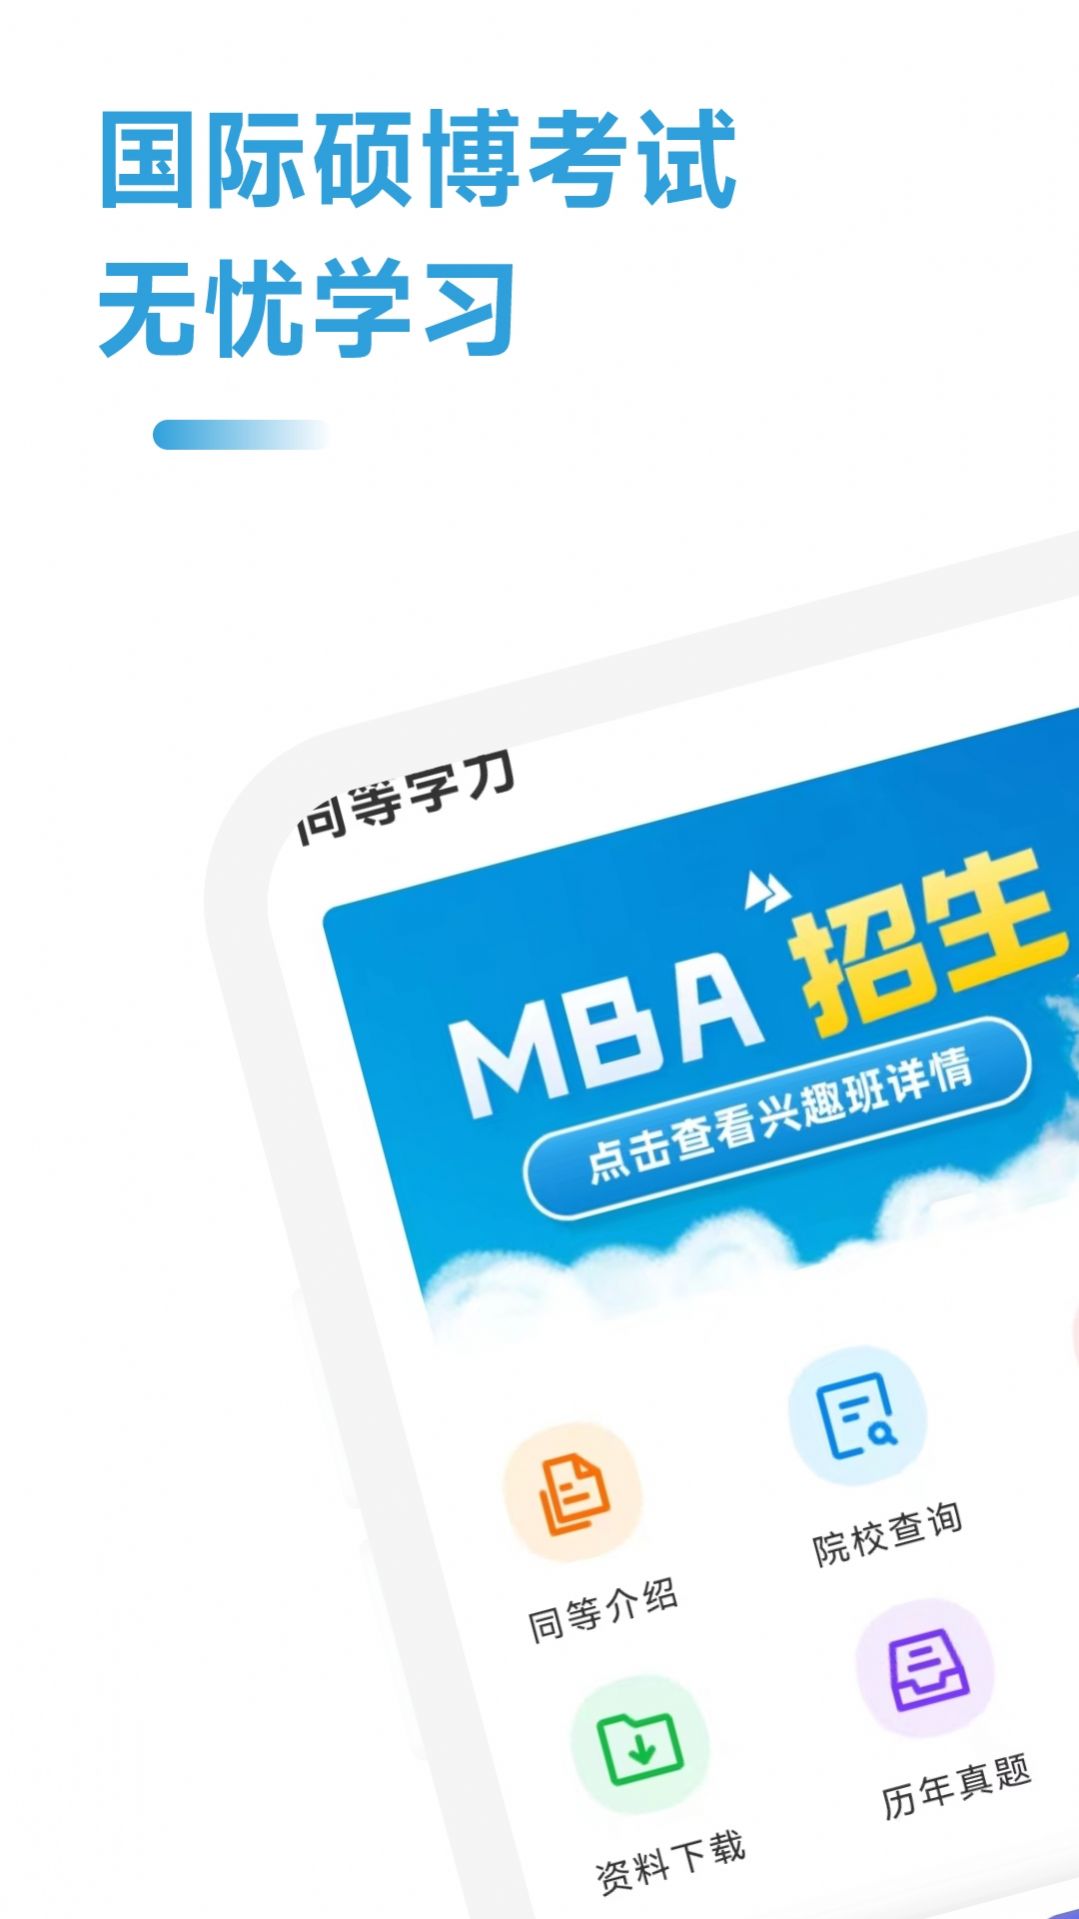 mba联考考试助手app官方版下载图片2